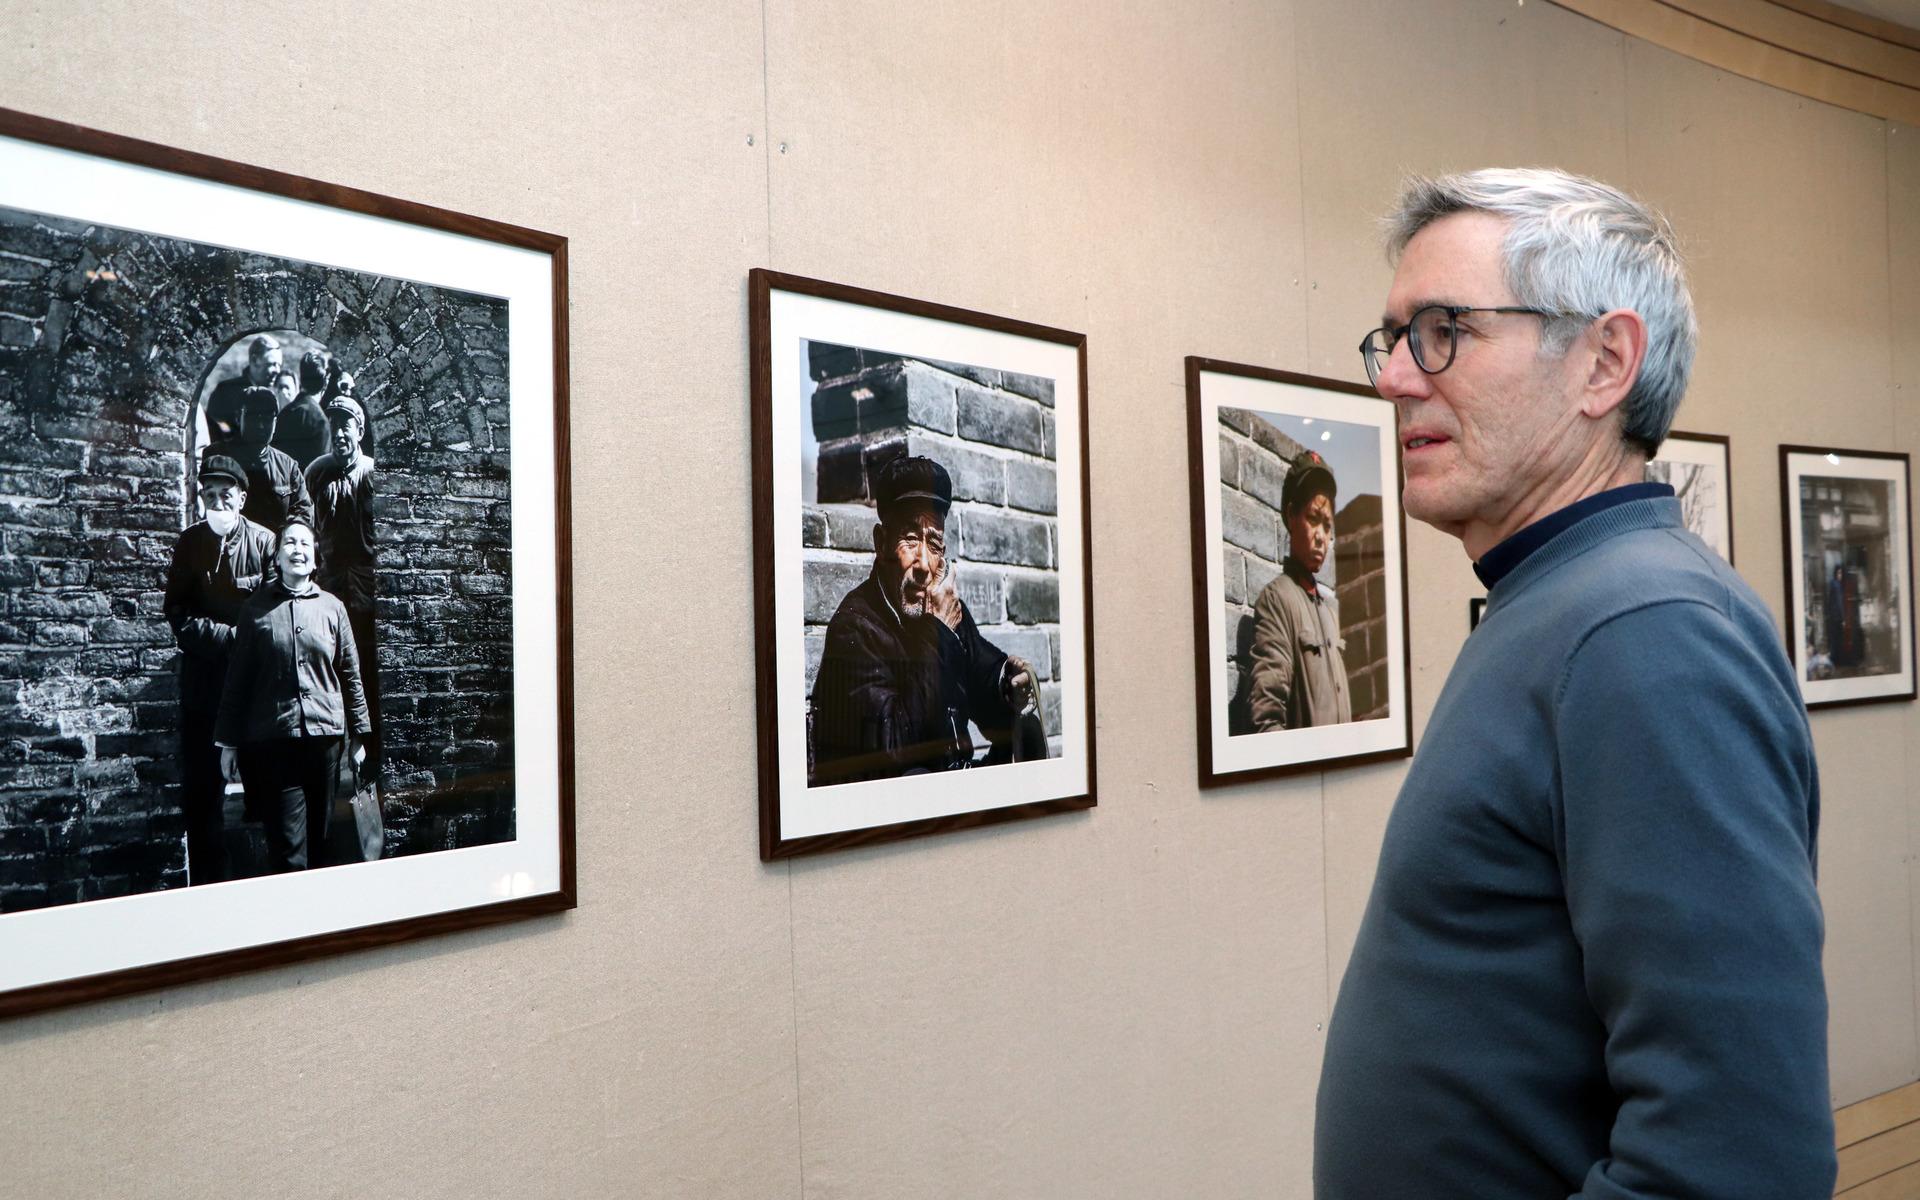 Jens framför sina egna favoritfoton. Han berättar att det även finns många fotografier från Moskva under Sovjettiden. 